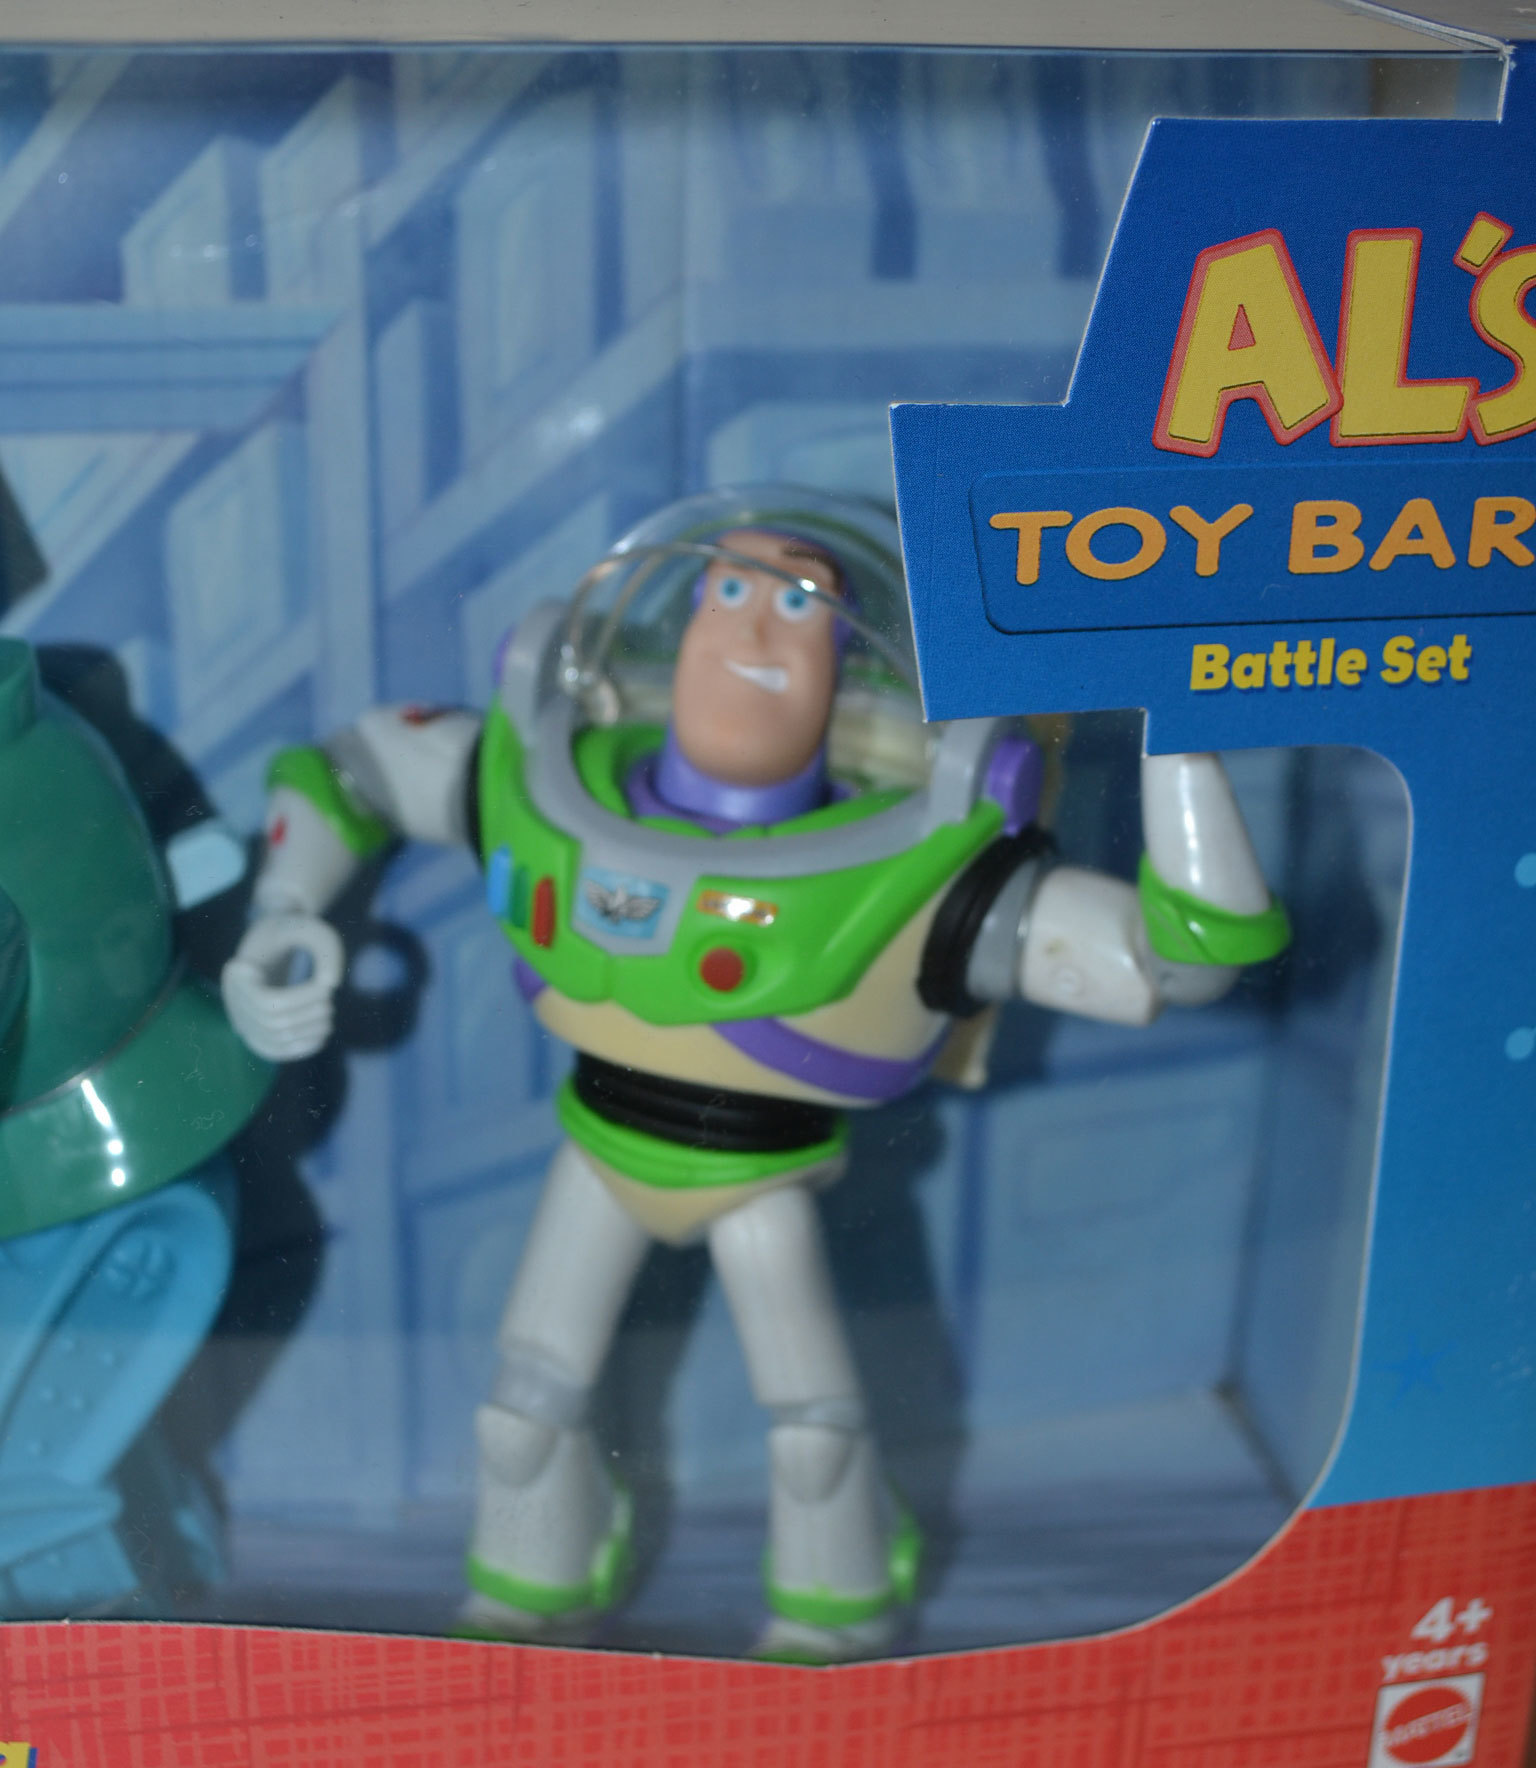 Toy Story 2 Als Toy Barn Battle トイストーリー 2 アルのトイバーン バトル Mattel Cochi Ka Ka 東風かか